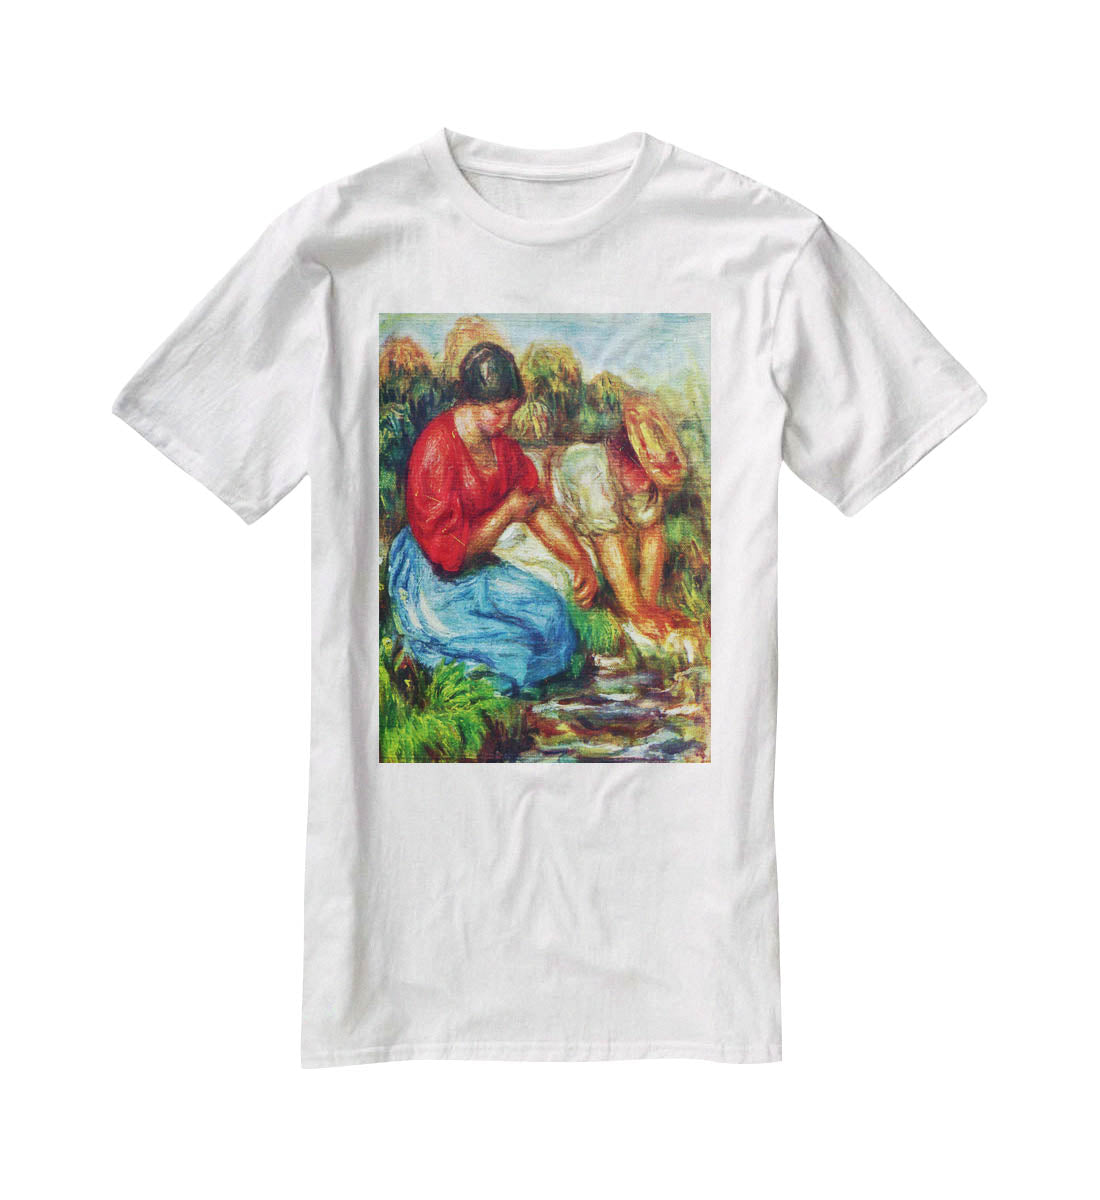 Laundresses 1 by Renoir T-Shirt - Canvas Art Rocks - 5